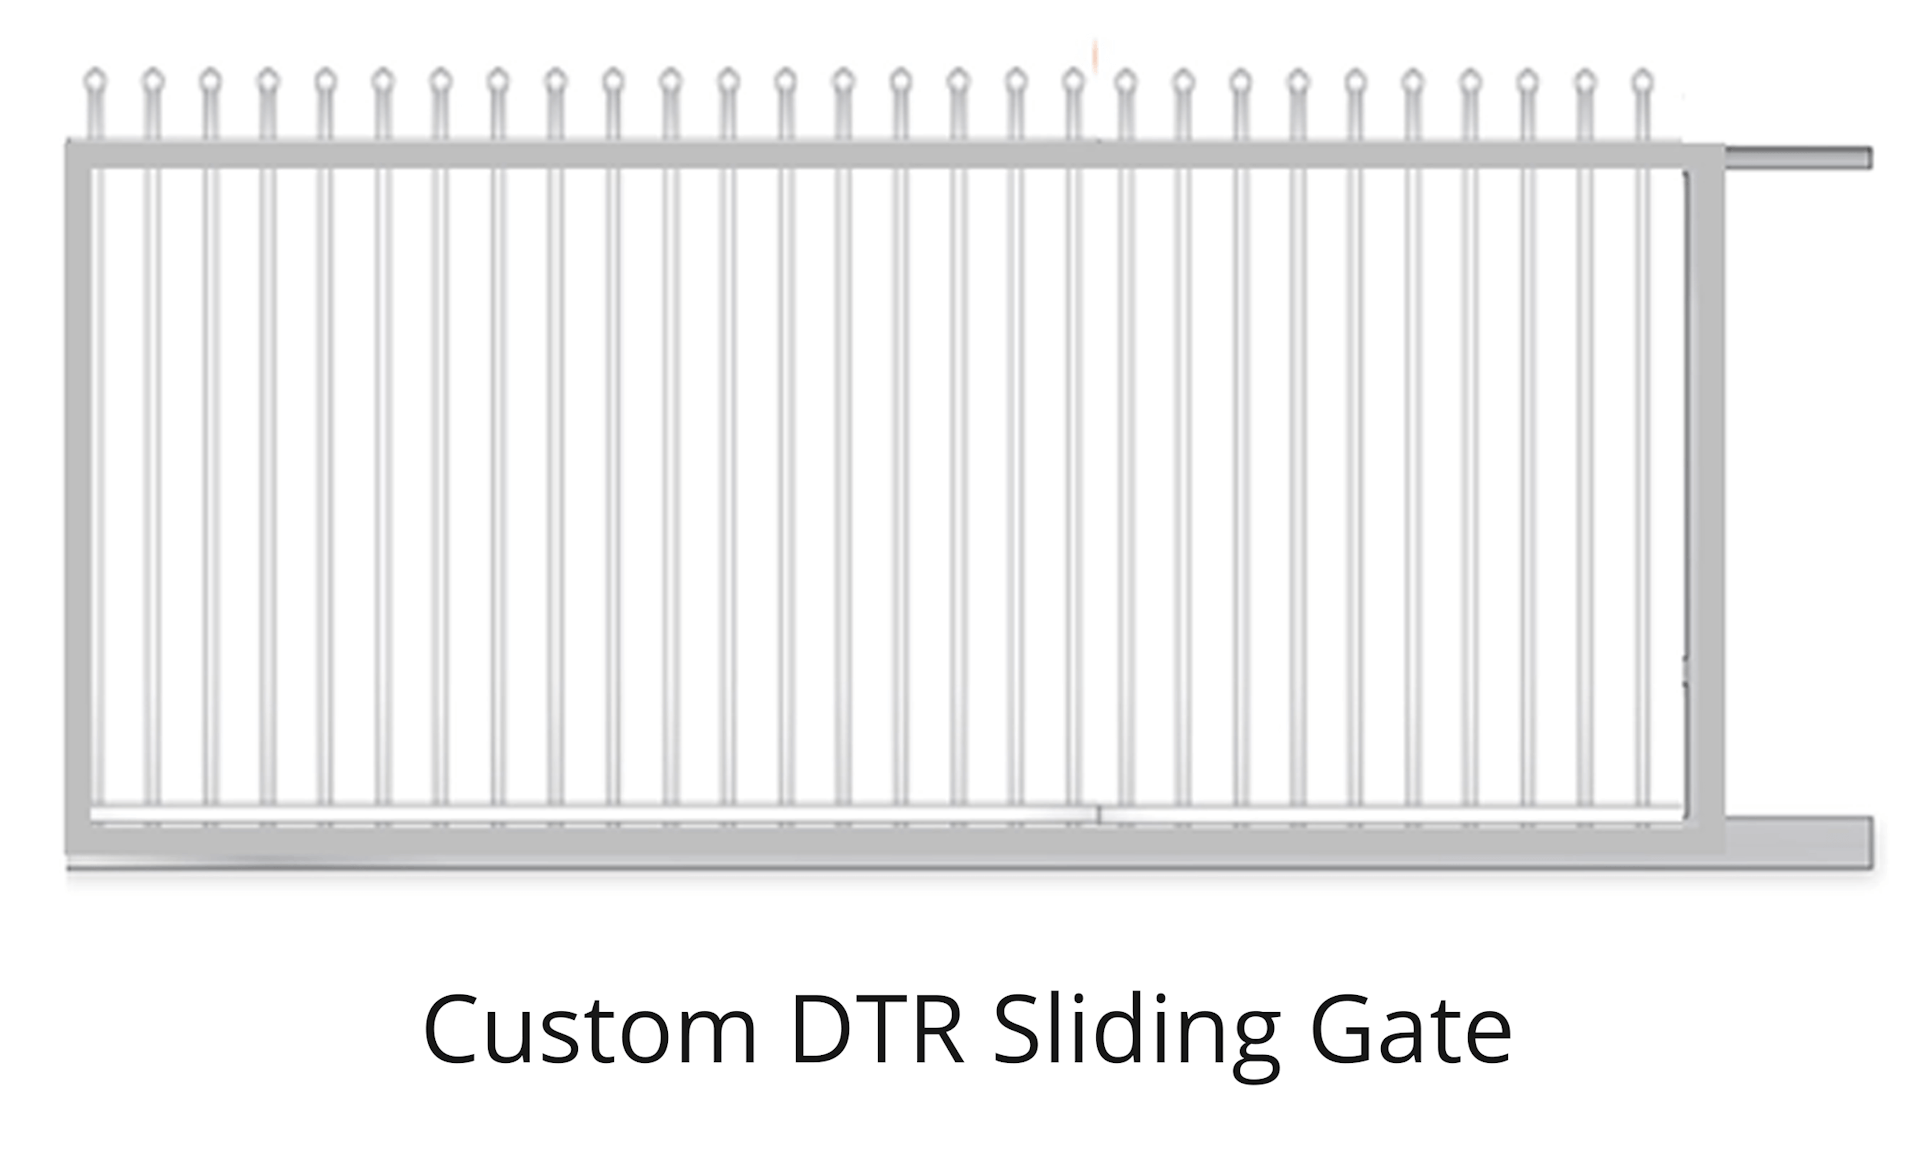 Custom DTR sliding gate